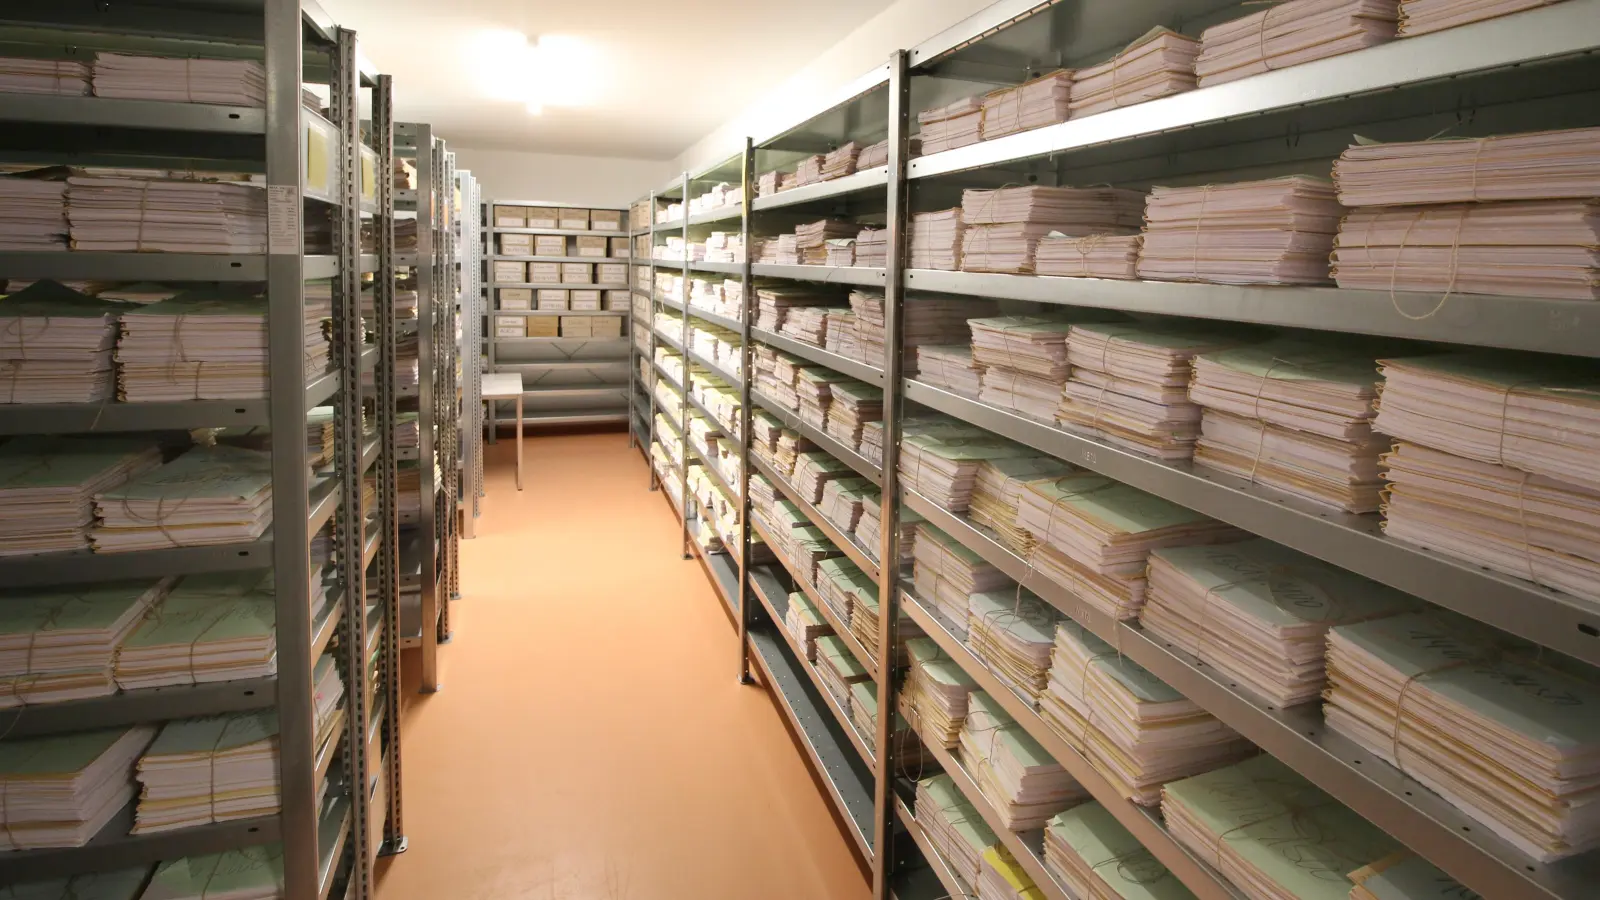 <b>Hunderttausende Urkunden</b> sammeln sich im begehbaren Safe. Das Aichacher Notariat ist eines der wenigen in Bayern mit eigenem Archiv. Vorteil: Sämtliche Urkunden der vergangenen 100 Jahre sind sofort verfügbar. Das spart Zeit bei Amtsvorgängen. (Foto: Wolfgang Glas)